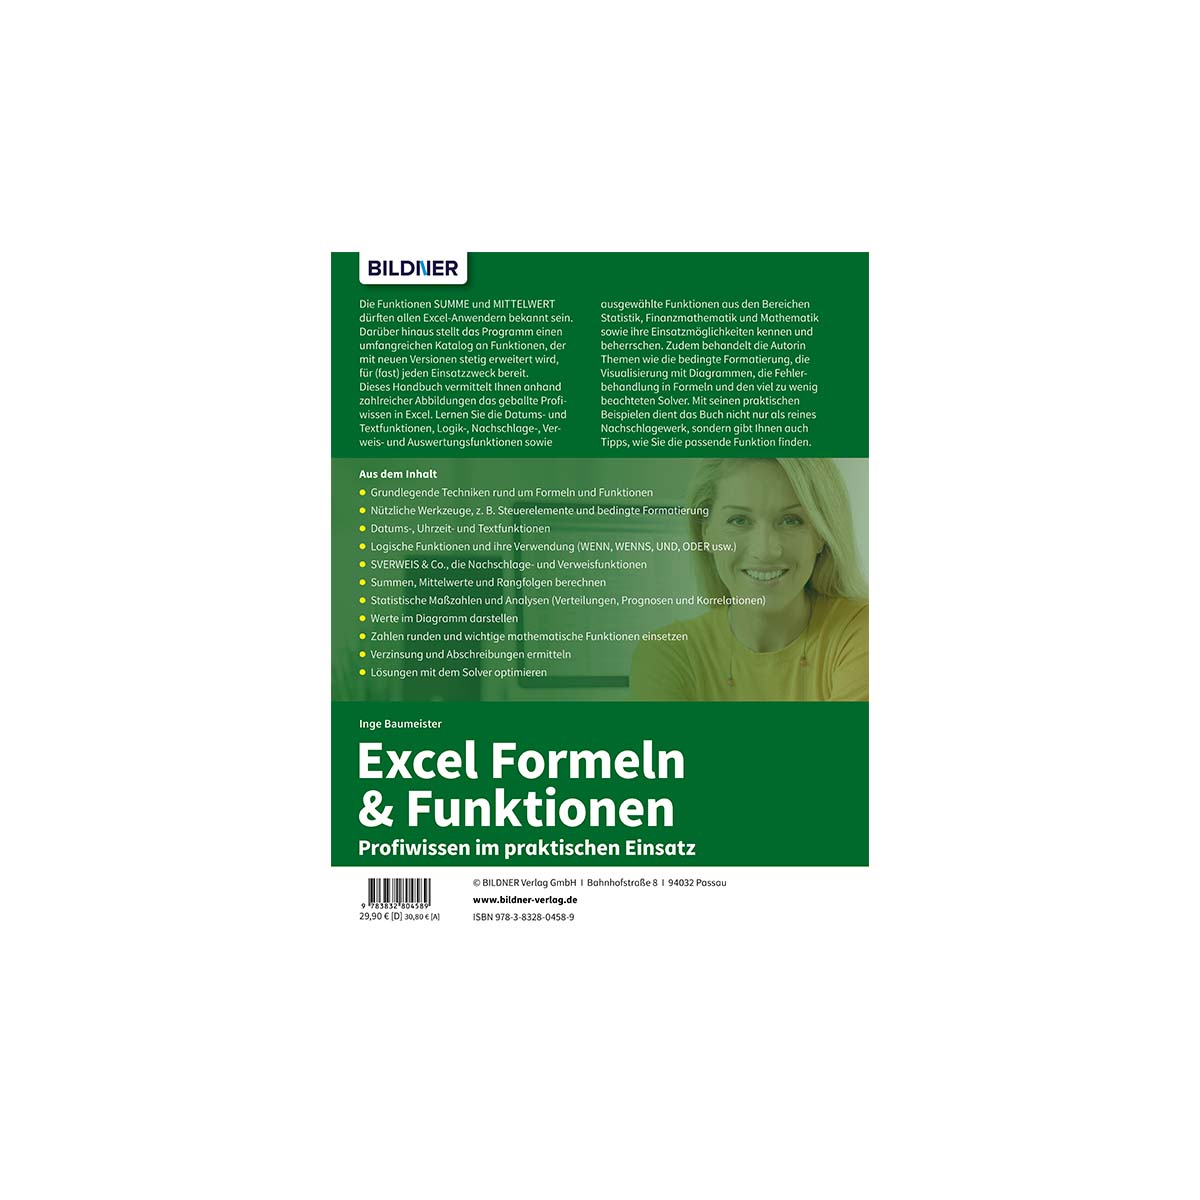 Excel Formeln & praktischen im Funktionen: Profiwissen Einsatz